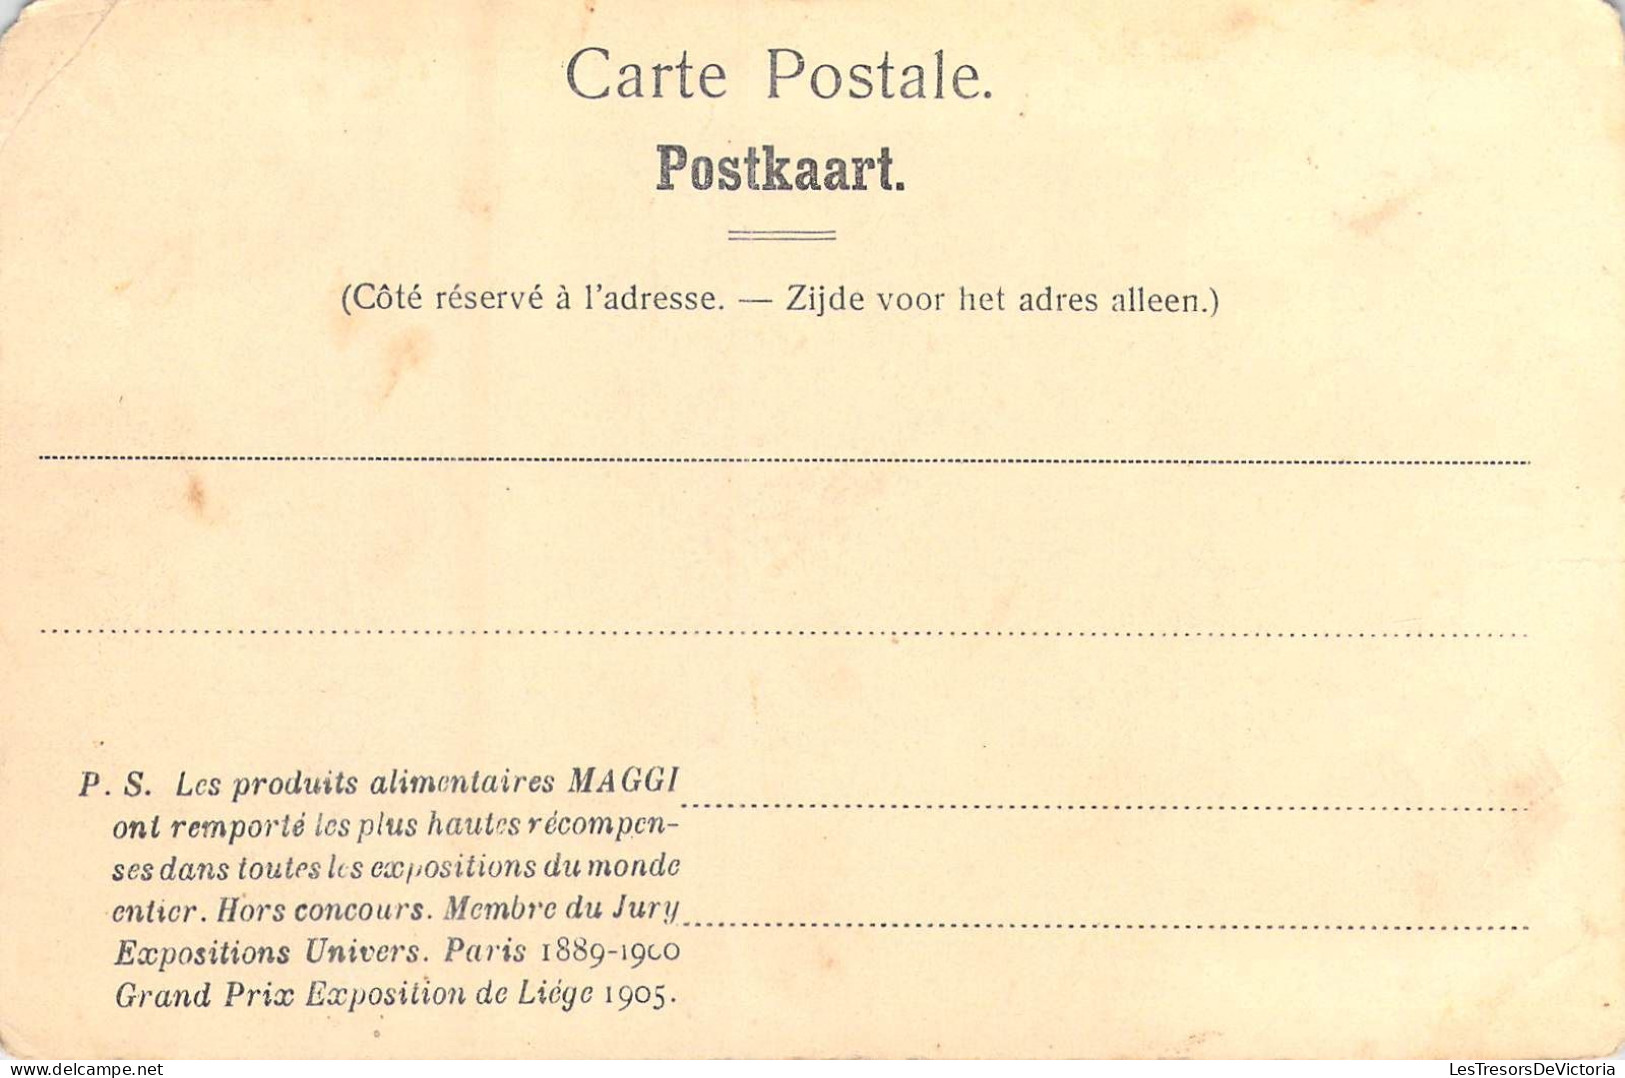 BELGIQUE - Les Environs De Bruxelles - Château De Gaasbeck - Carte Postale Ancienne - Altri & Non Classificati